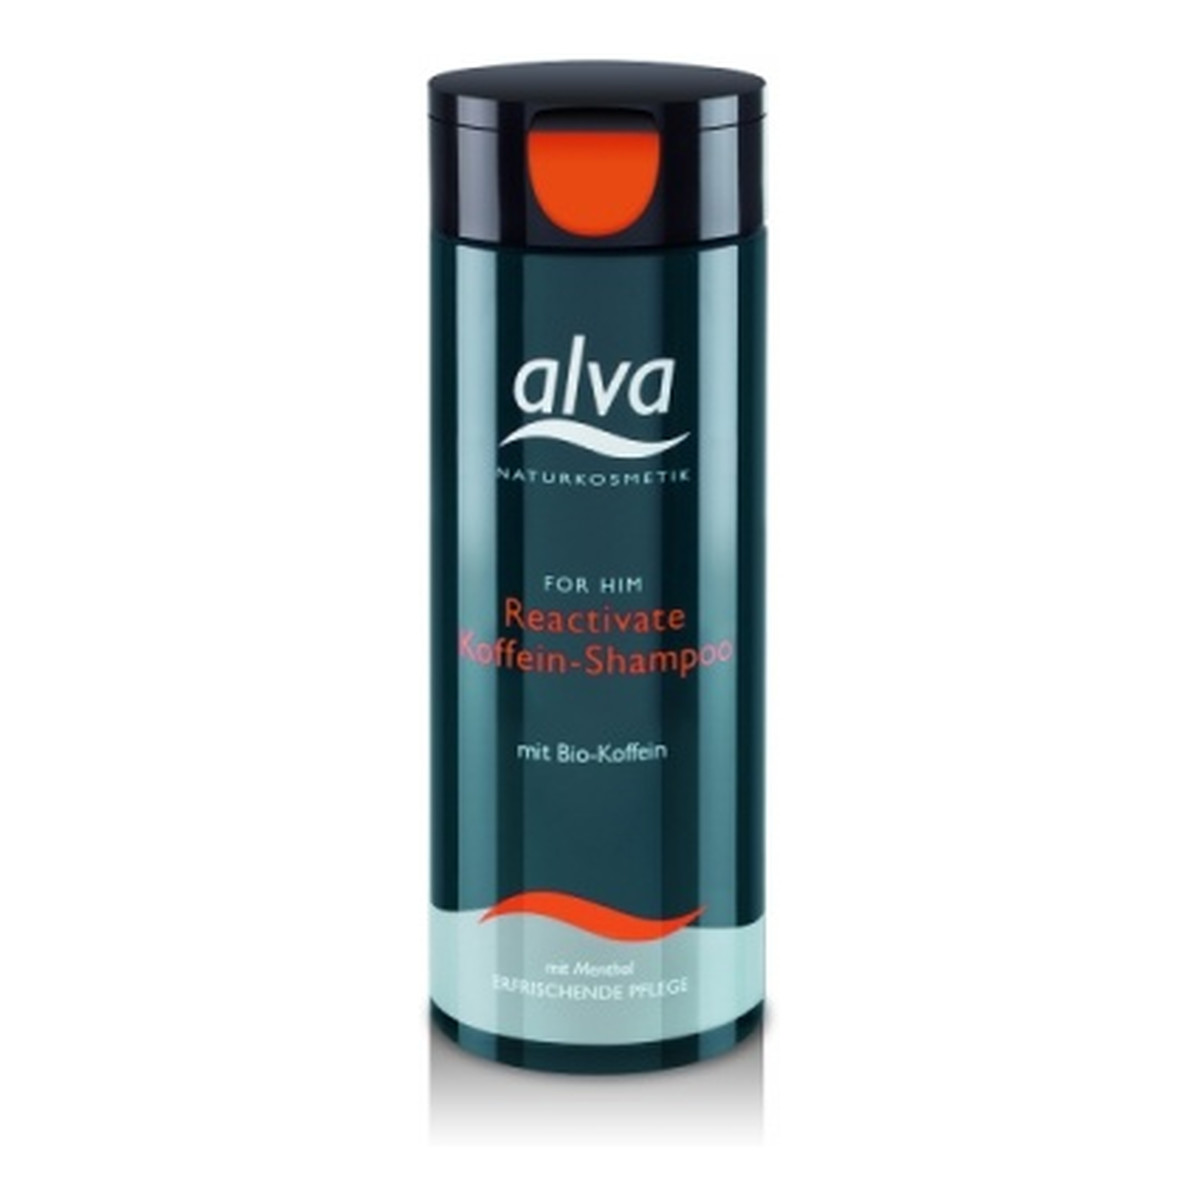 ALVA FOR HIM Wzmacniający szampon do włosów z kofeiną 200ml